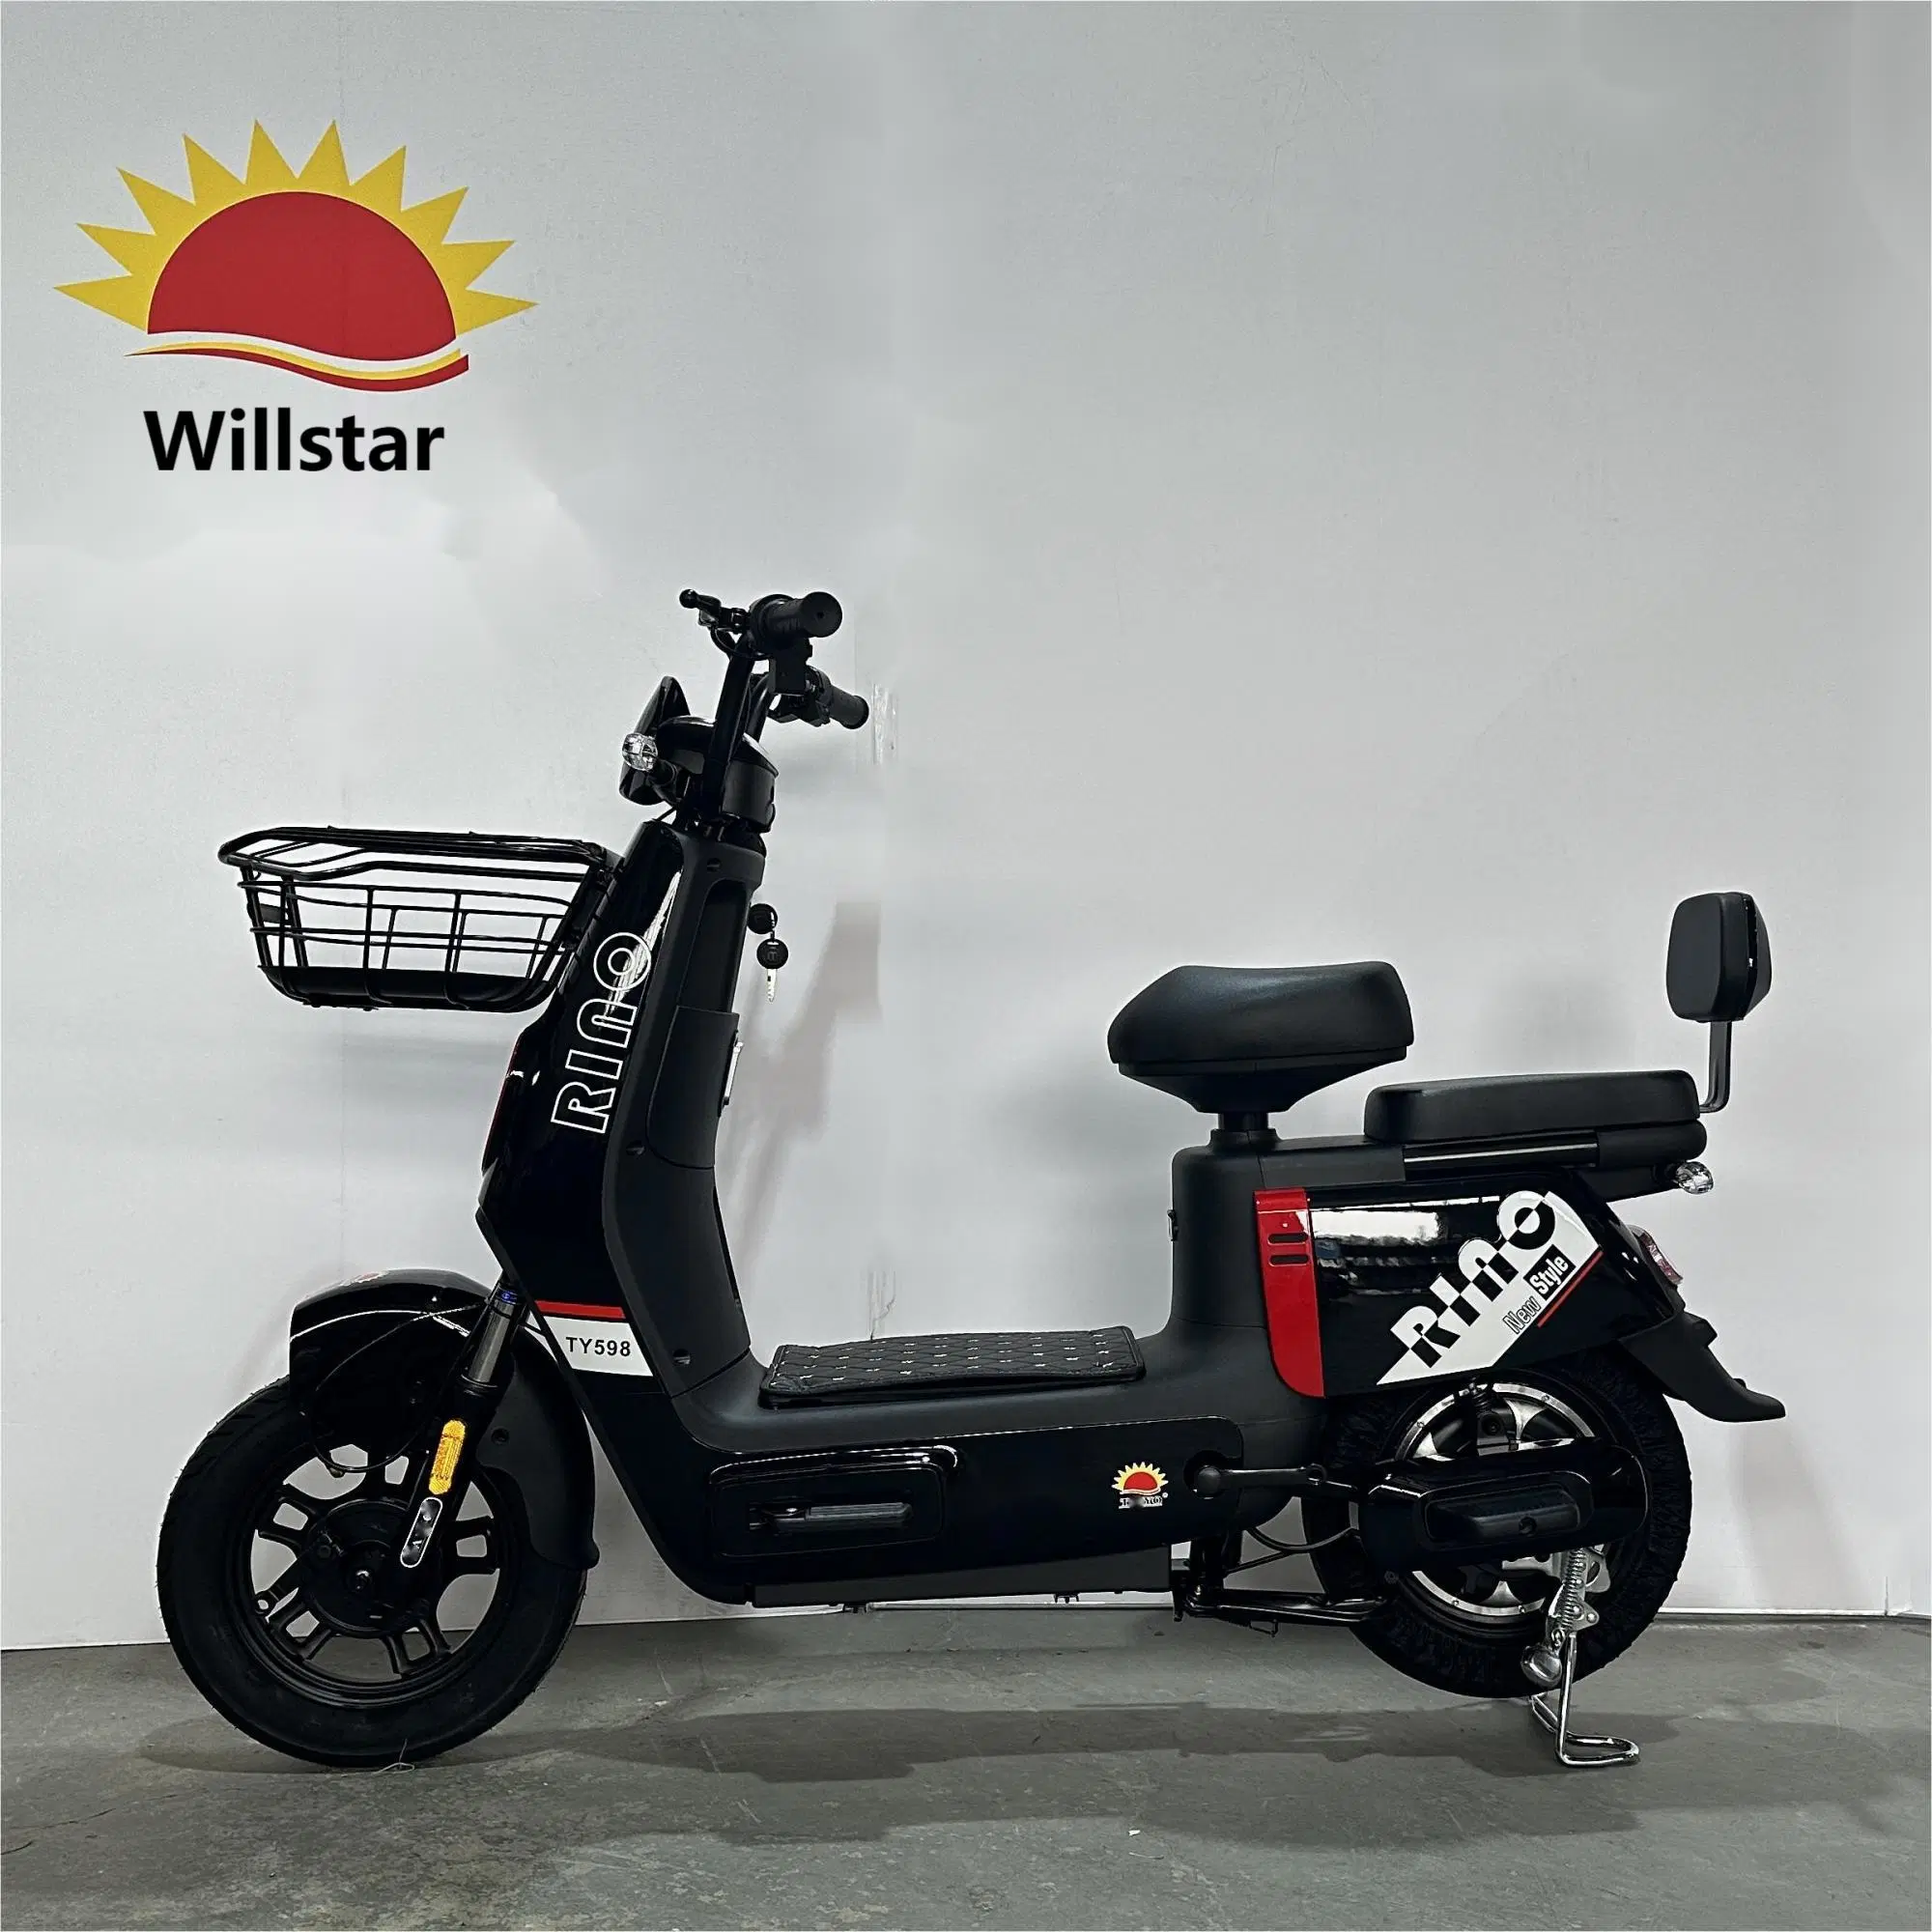 Willstar Electric Bike Ty598 con Chilwee o Tianneng batería de plomo ácido 48V12ah último modelo